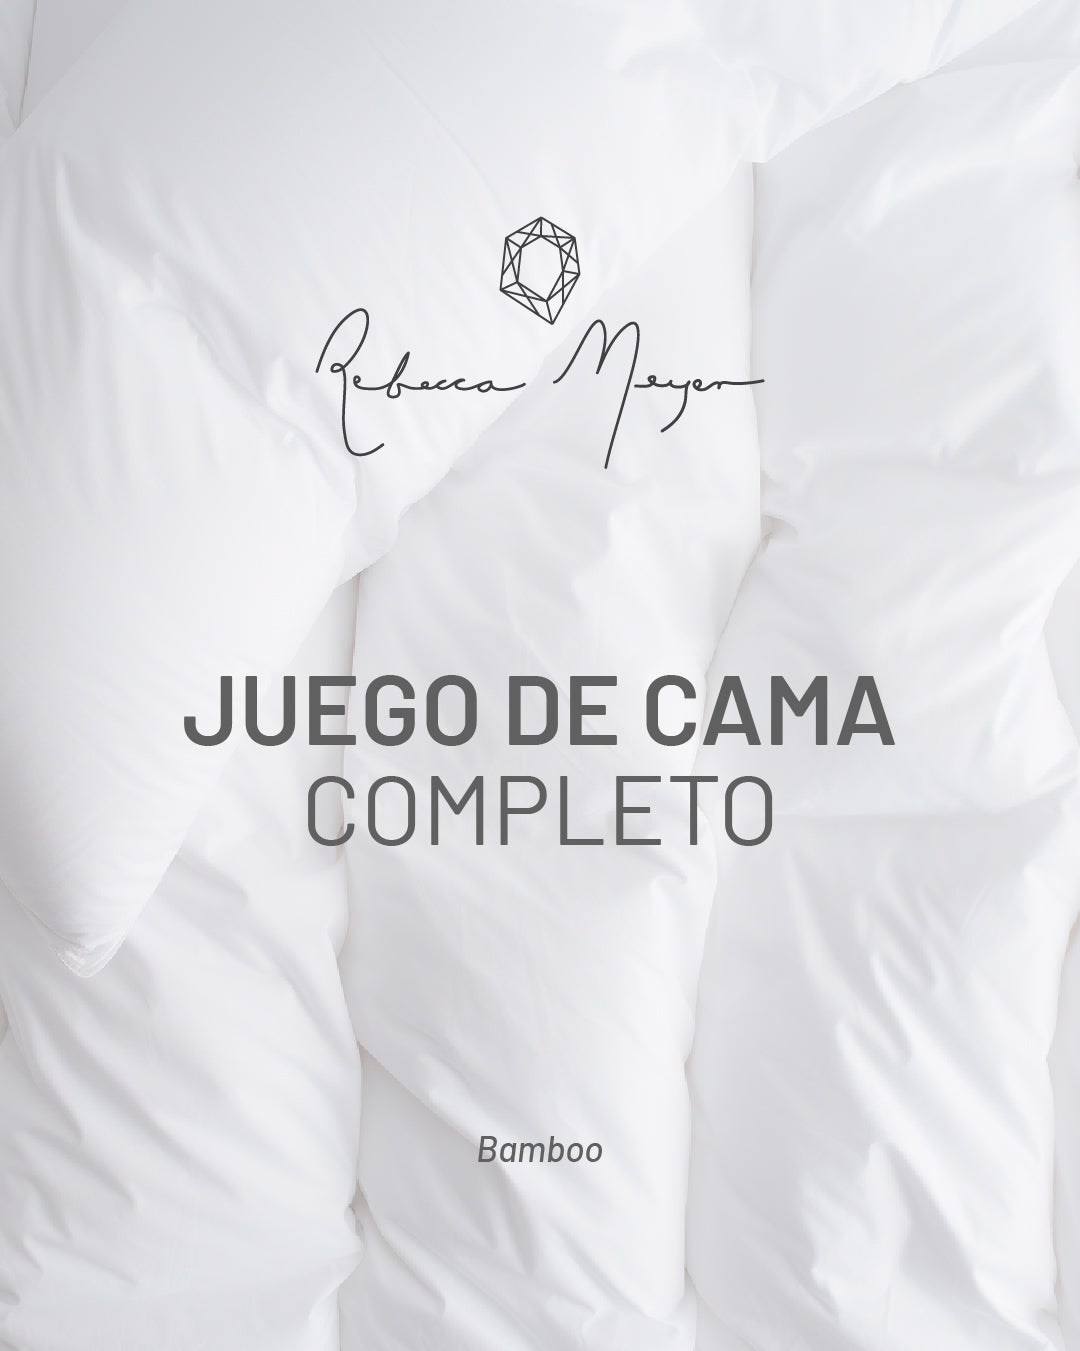 JUEGO DE CAMA REBECCA MEYER 60% BAMBOO 40% ALGODÓN KING